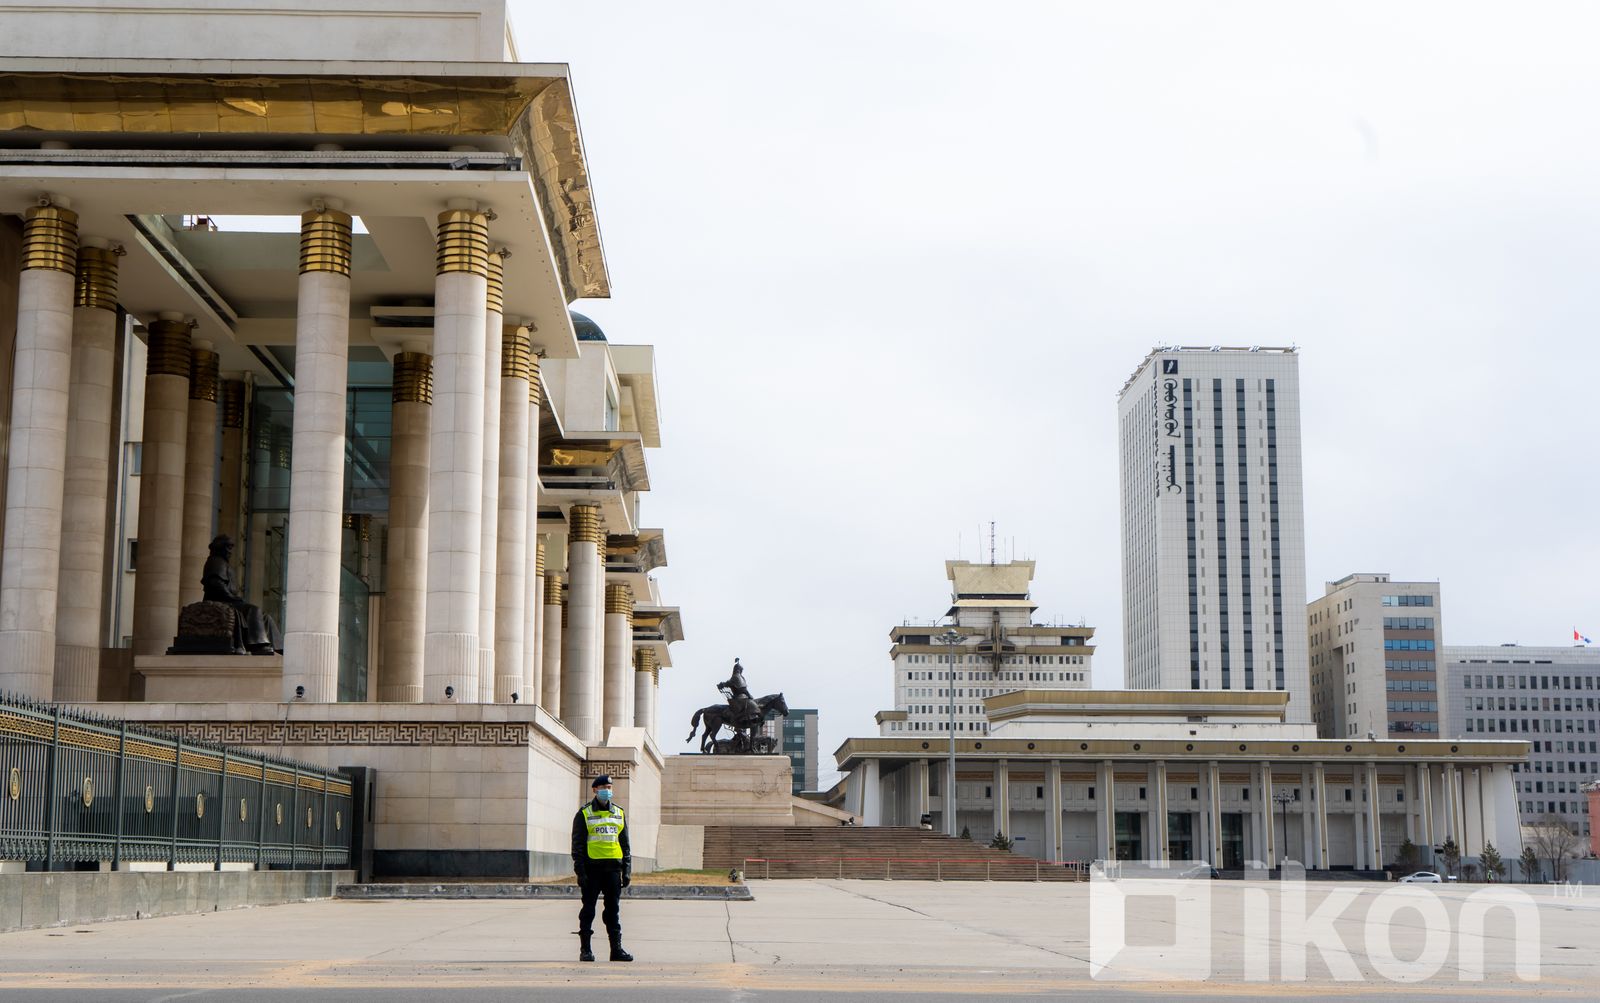 D.Sukhbaatar 광장에서 교통이 제한되고 경찰 보호가 제공되어.jpg